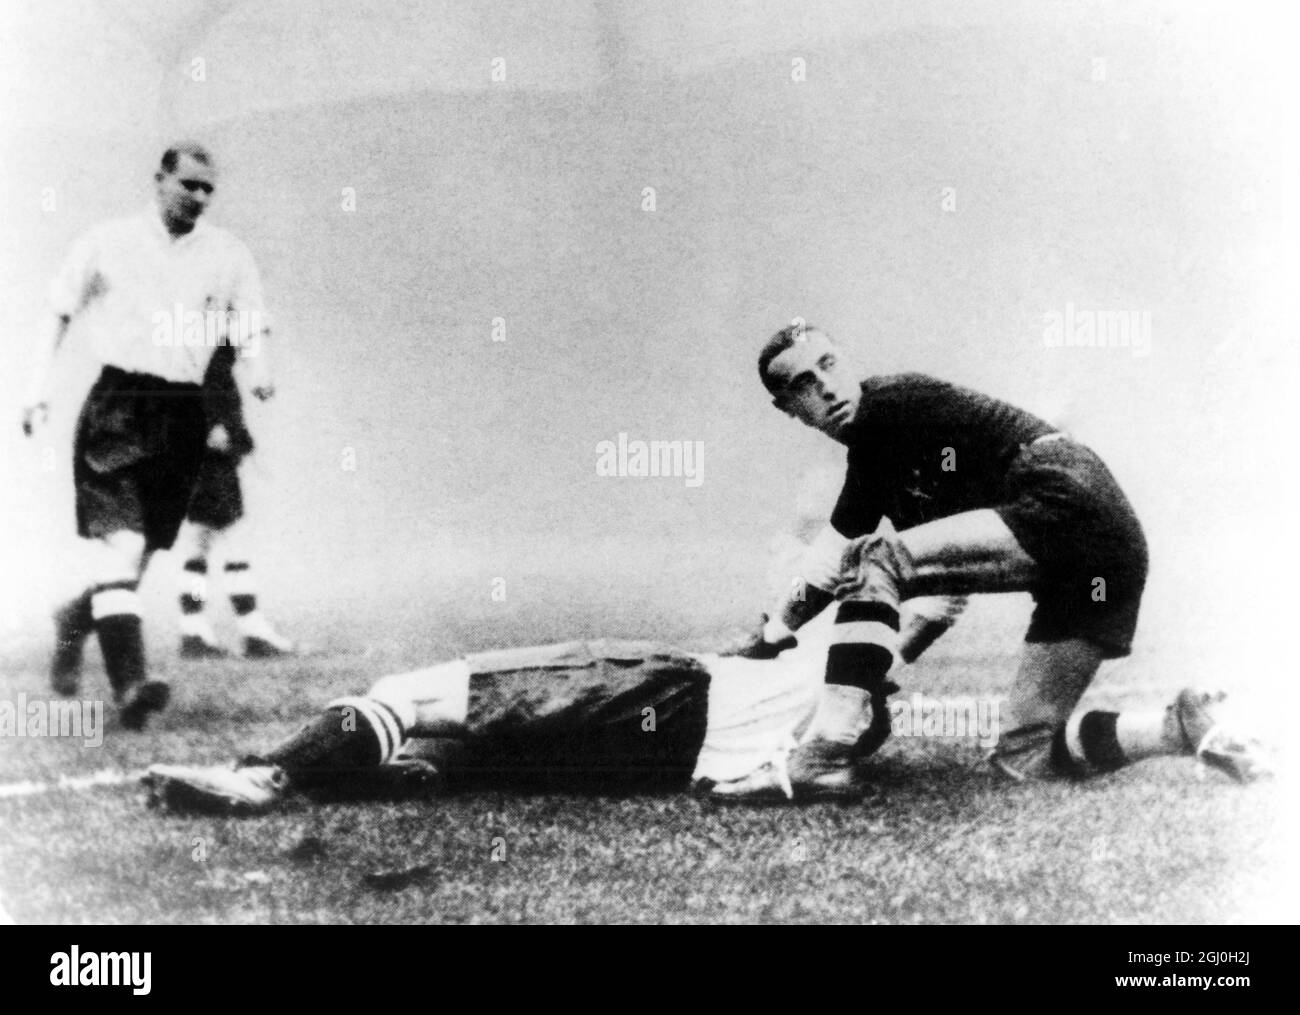 Angleterre contre l'Italie à Highbury - 1934 - Ceresoli aide un joueur anglais tombé et regarde comme le ballon va dans le filet. Banque D'Images